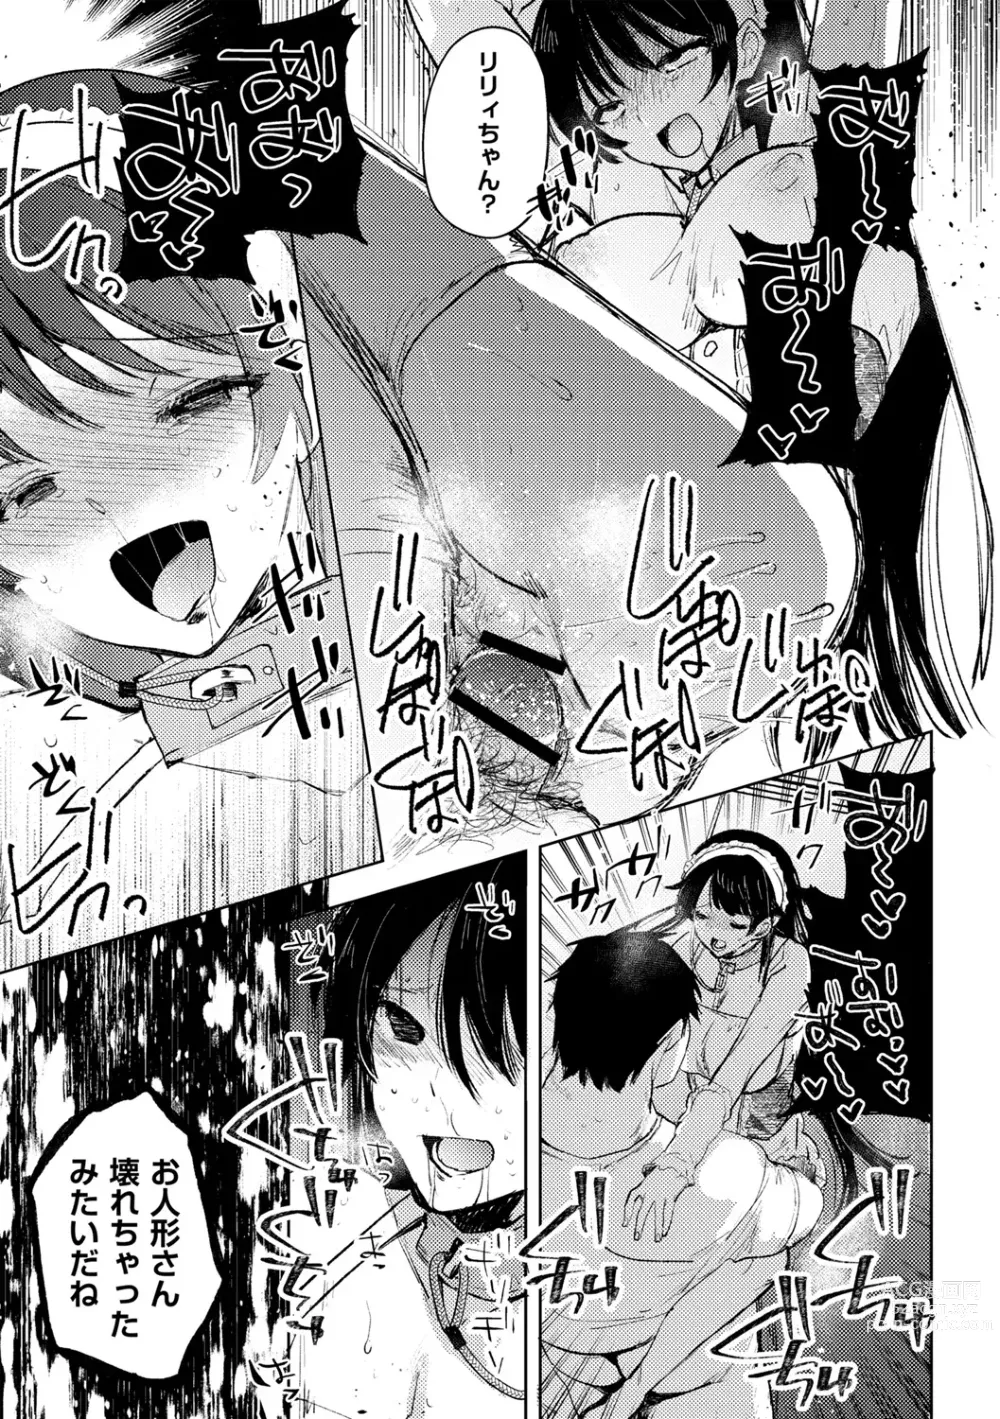 Page 25 of manga Yuuhei  KodoOji no Tou